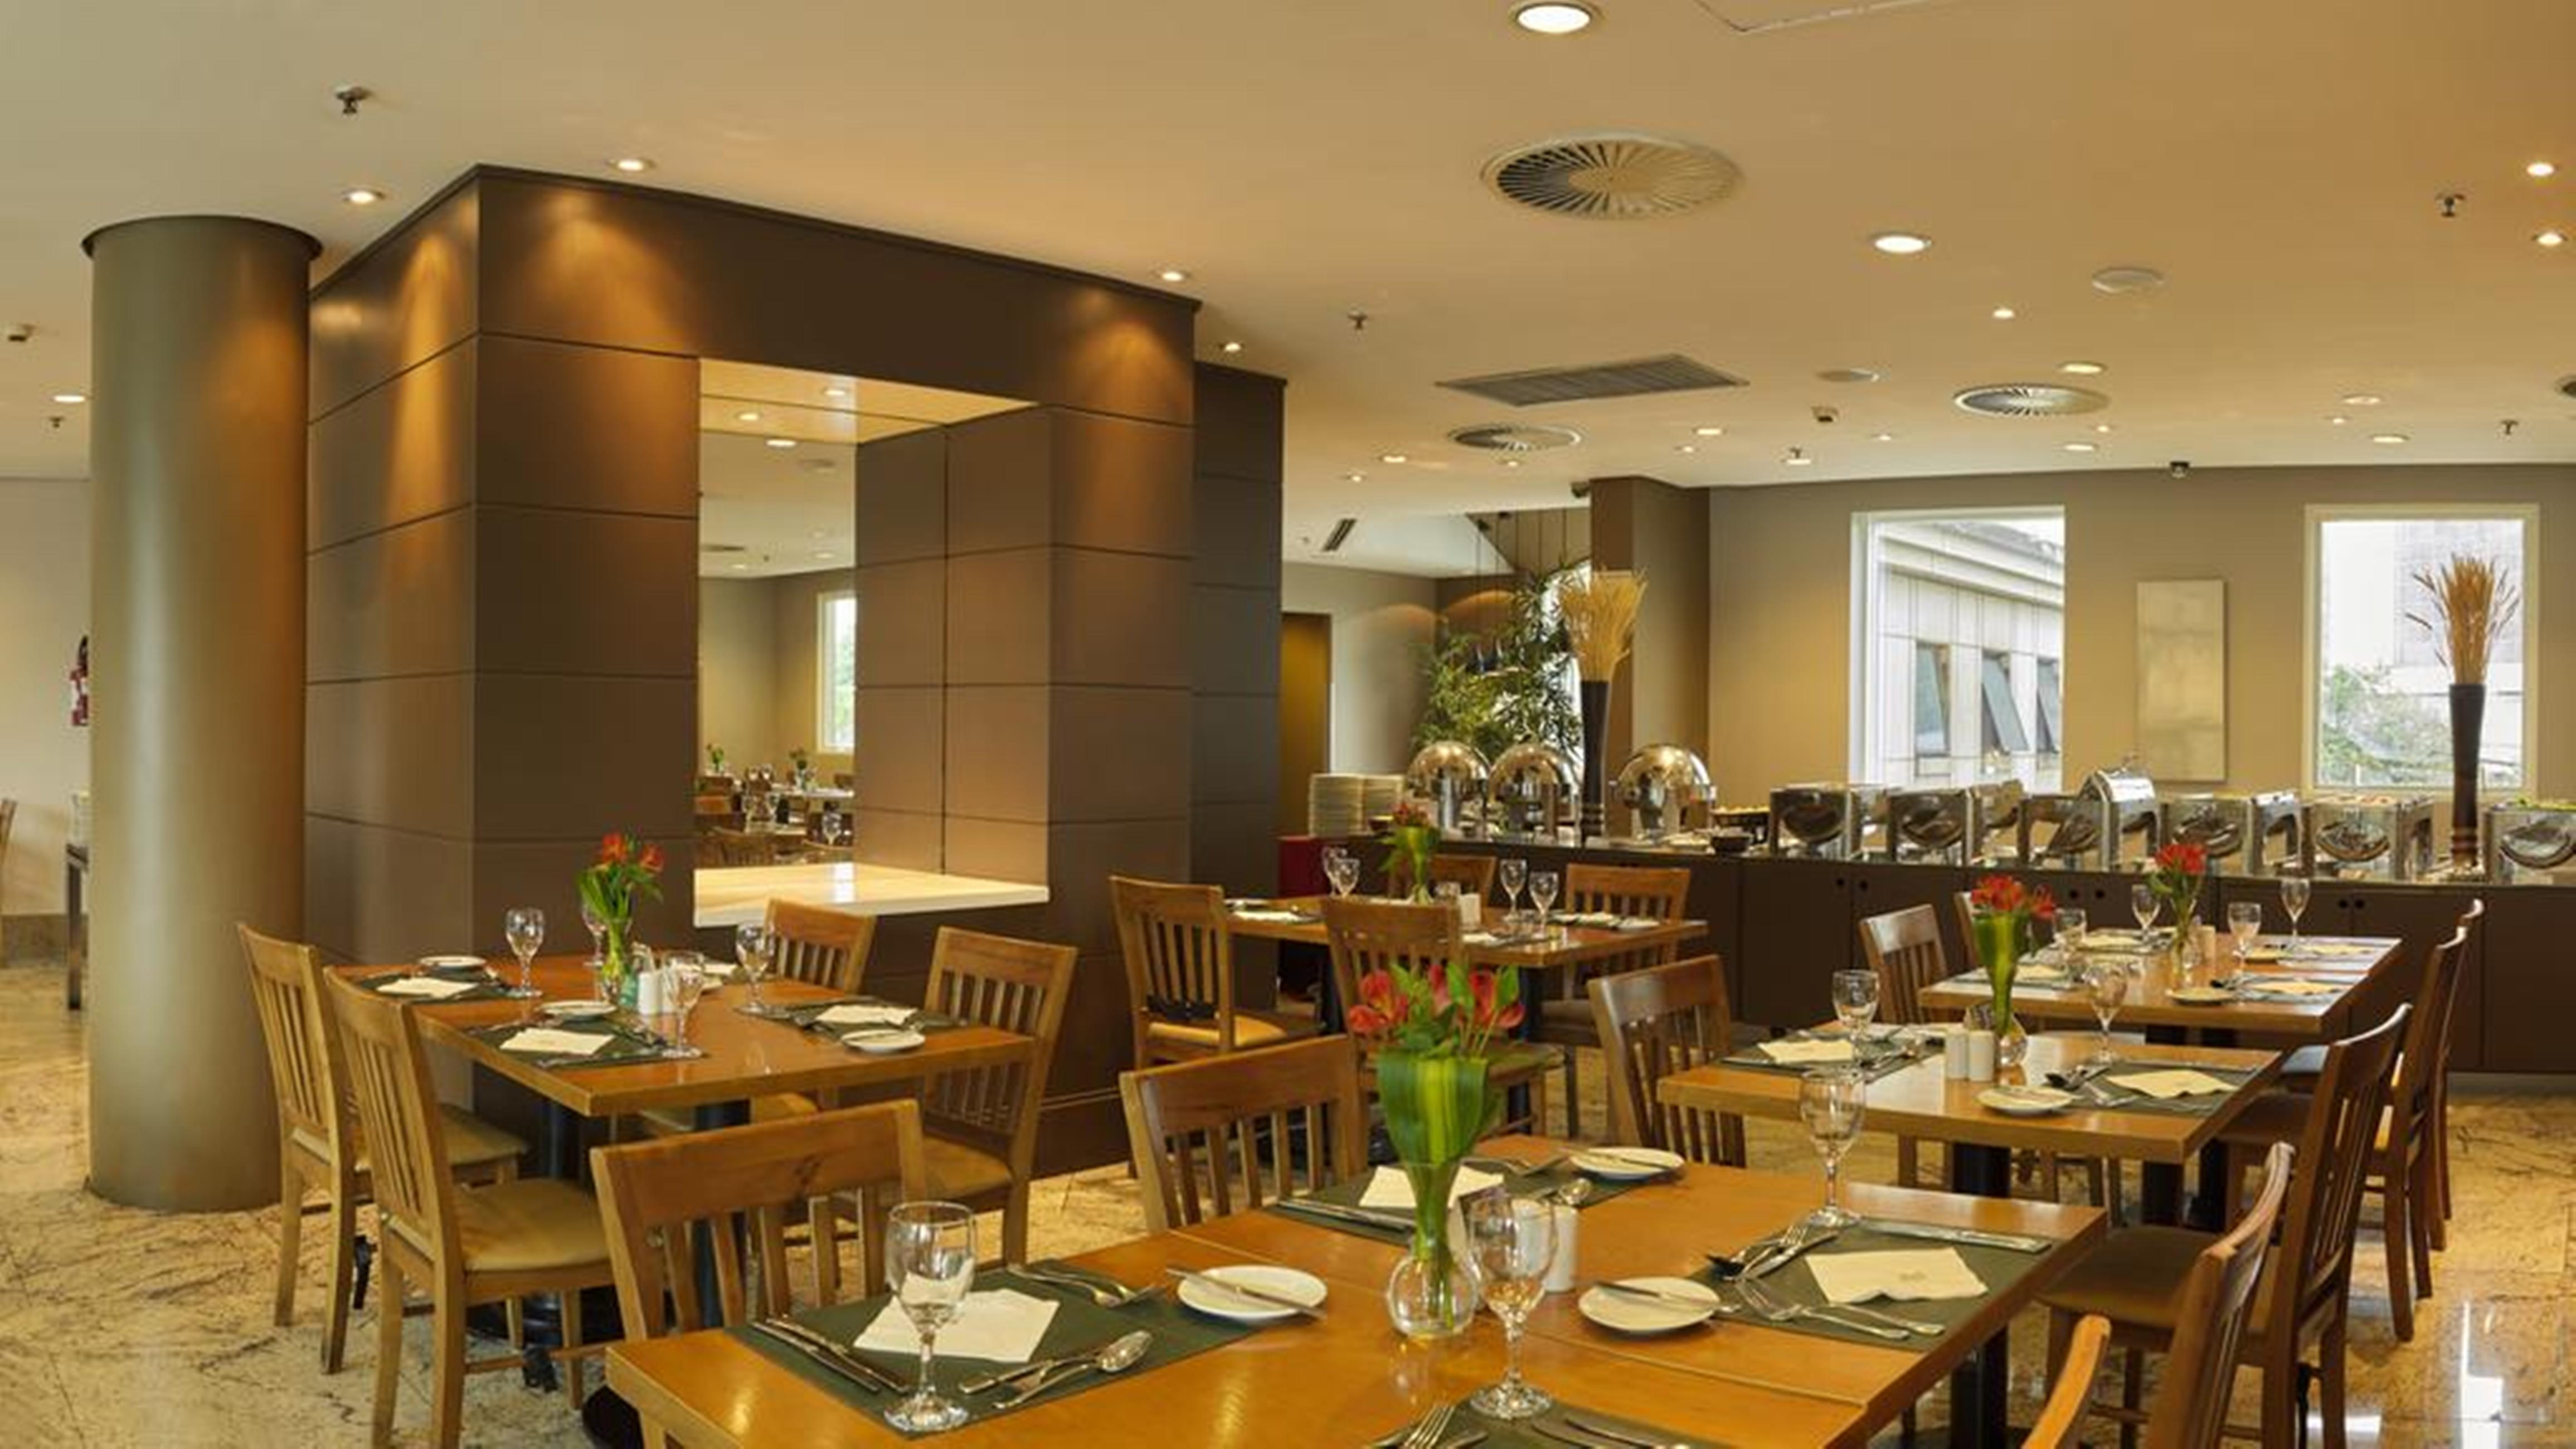 Club Homs, São Paulo, Av. Paulista - Restaurant reviews